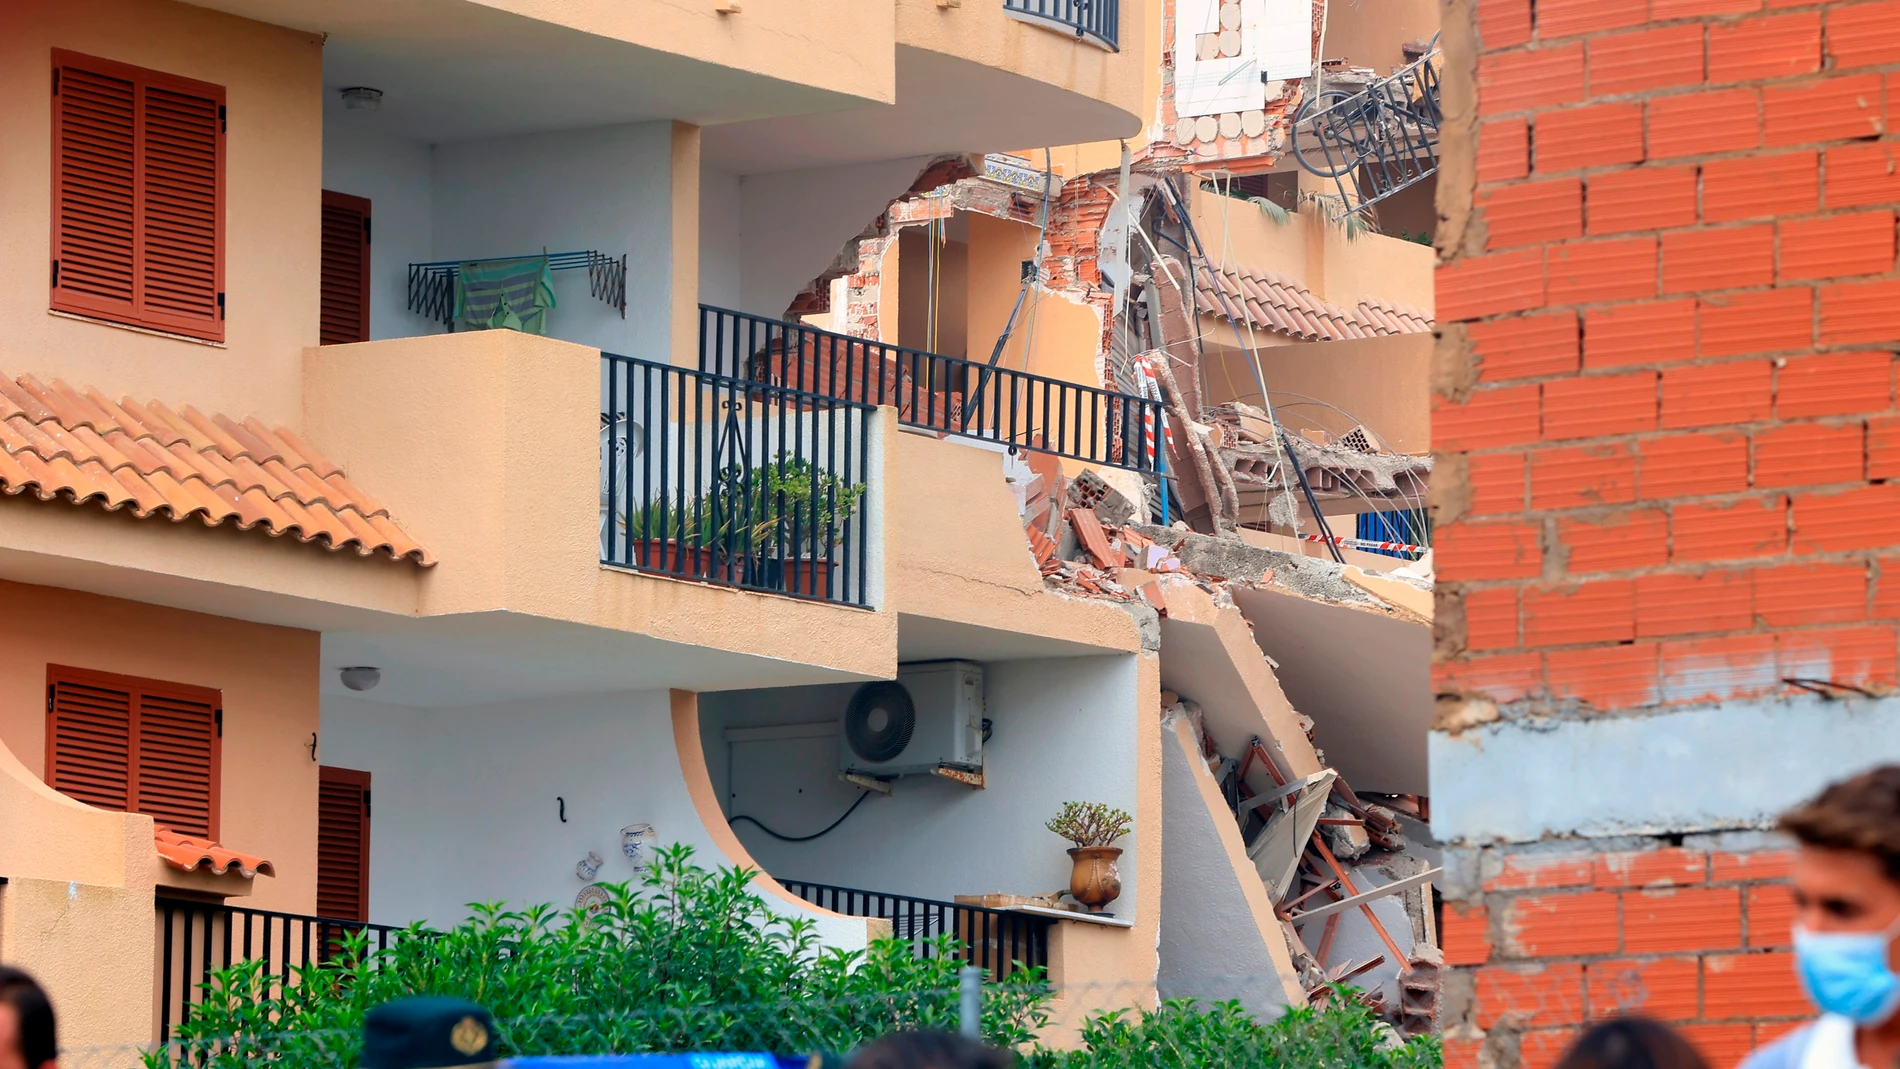 El edificio de tres plantas que se ha derrumbado en una urbanización de Peñíscola (Castellón) y ha dejado por el momento una persona fallecida, una herida y una desaparecida, tenía 30 años de antigüedad y colapsó "bastante rápido", como si fuera "un dominó"